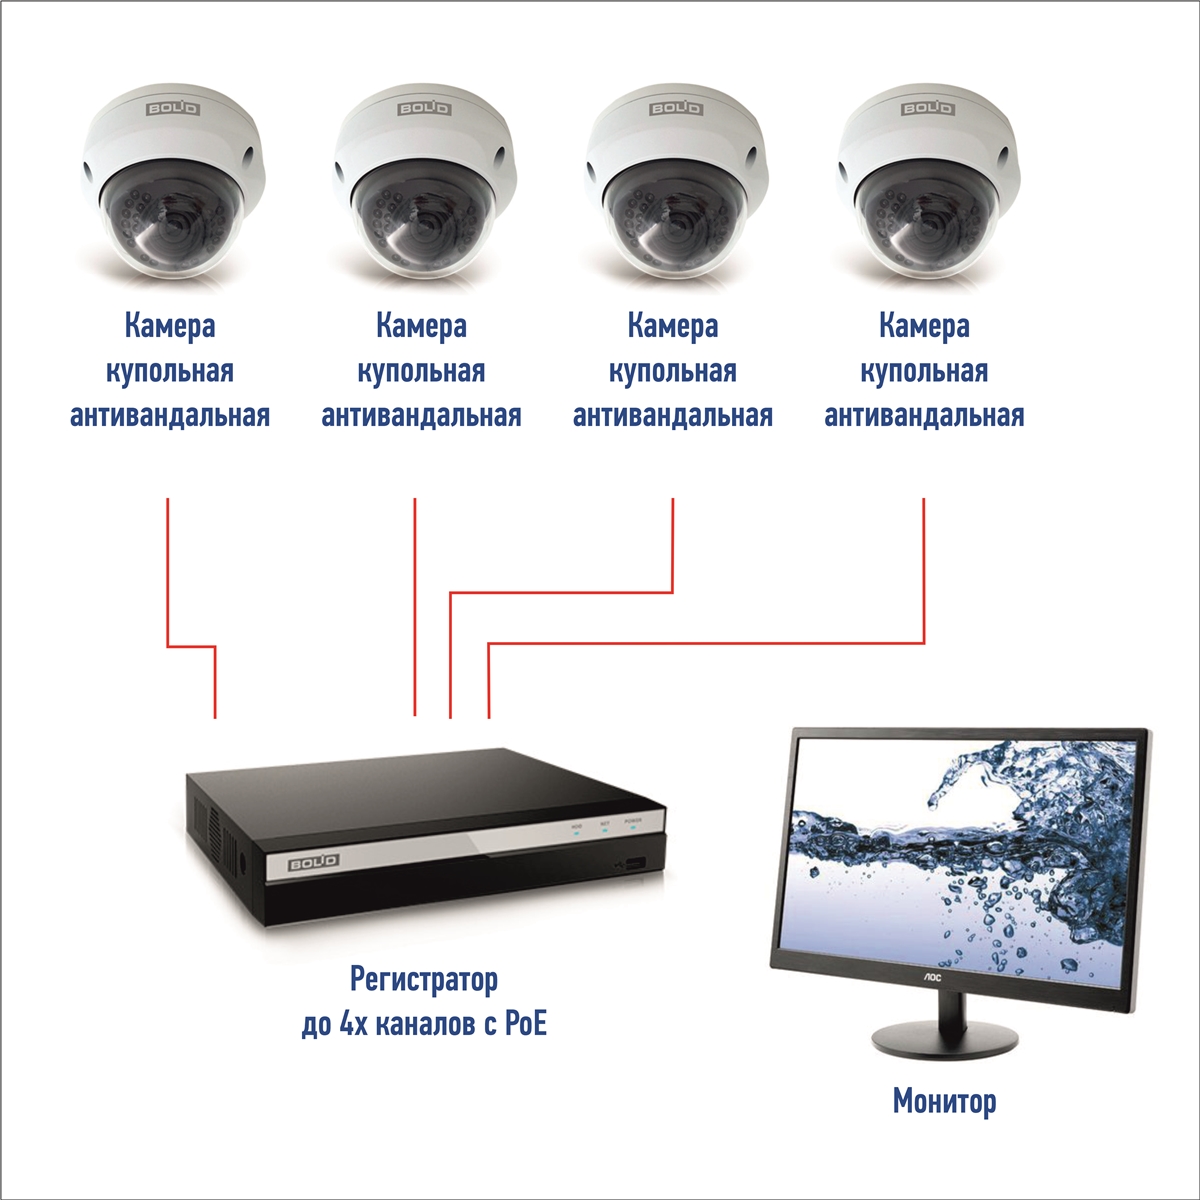 Комплект IP- видеонаблюдения на базе оборудования Болид внутренние камеры (4 шт.) POE